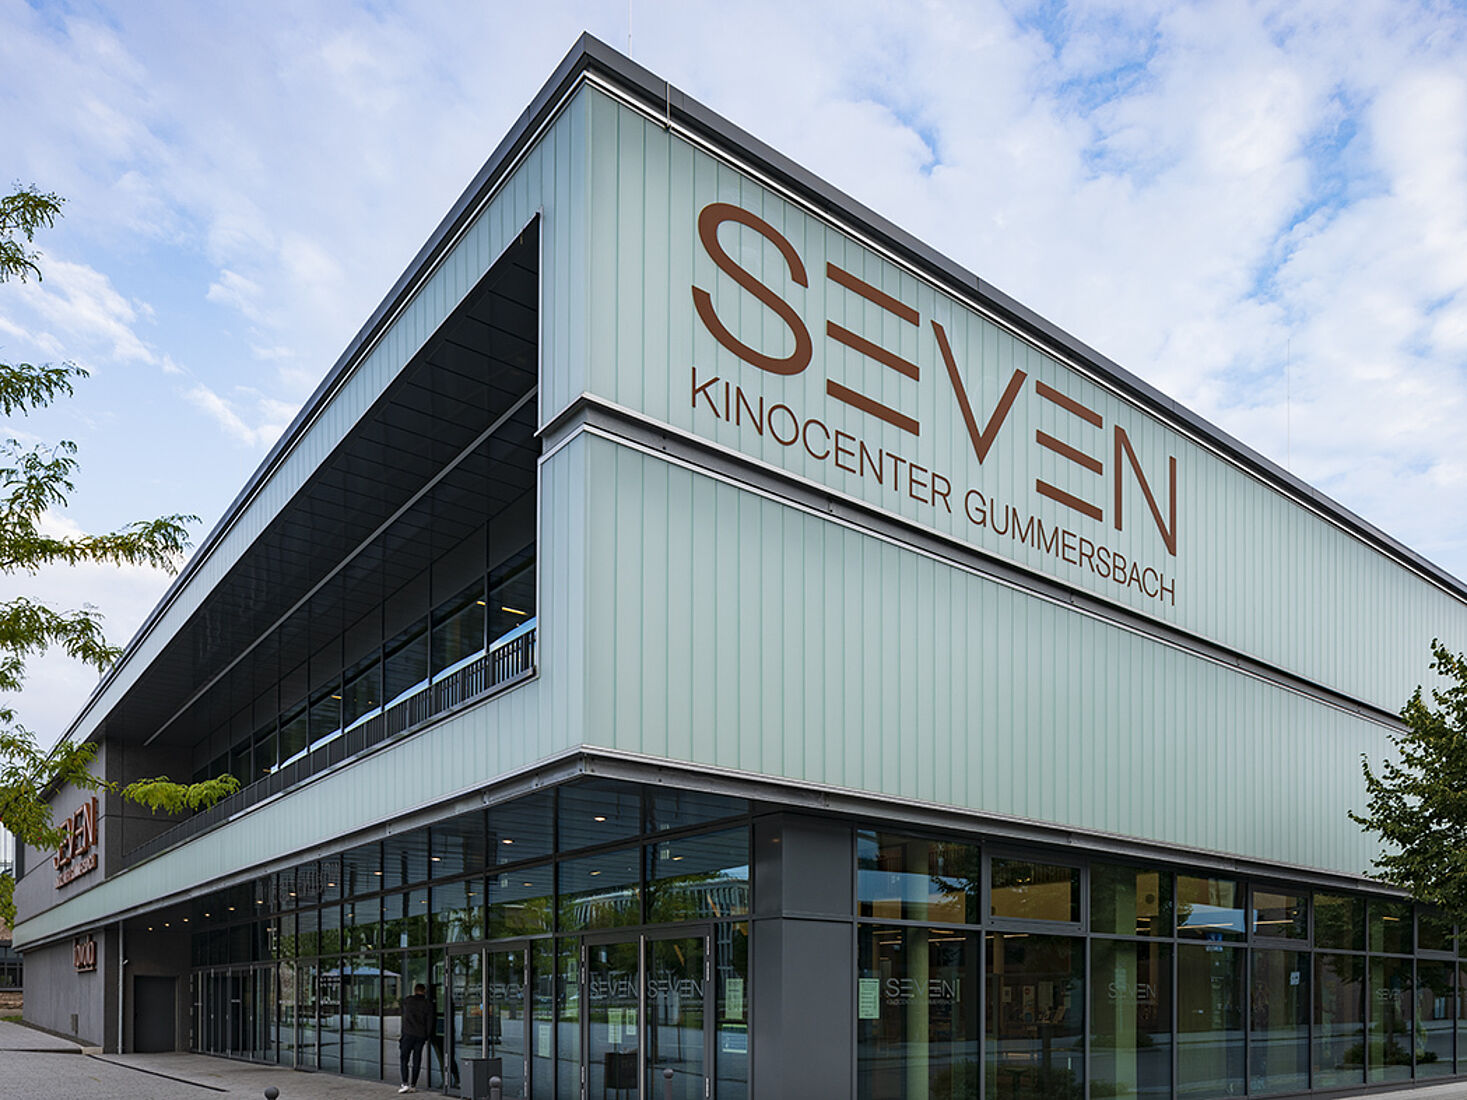 SEVEN Kinocenter